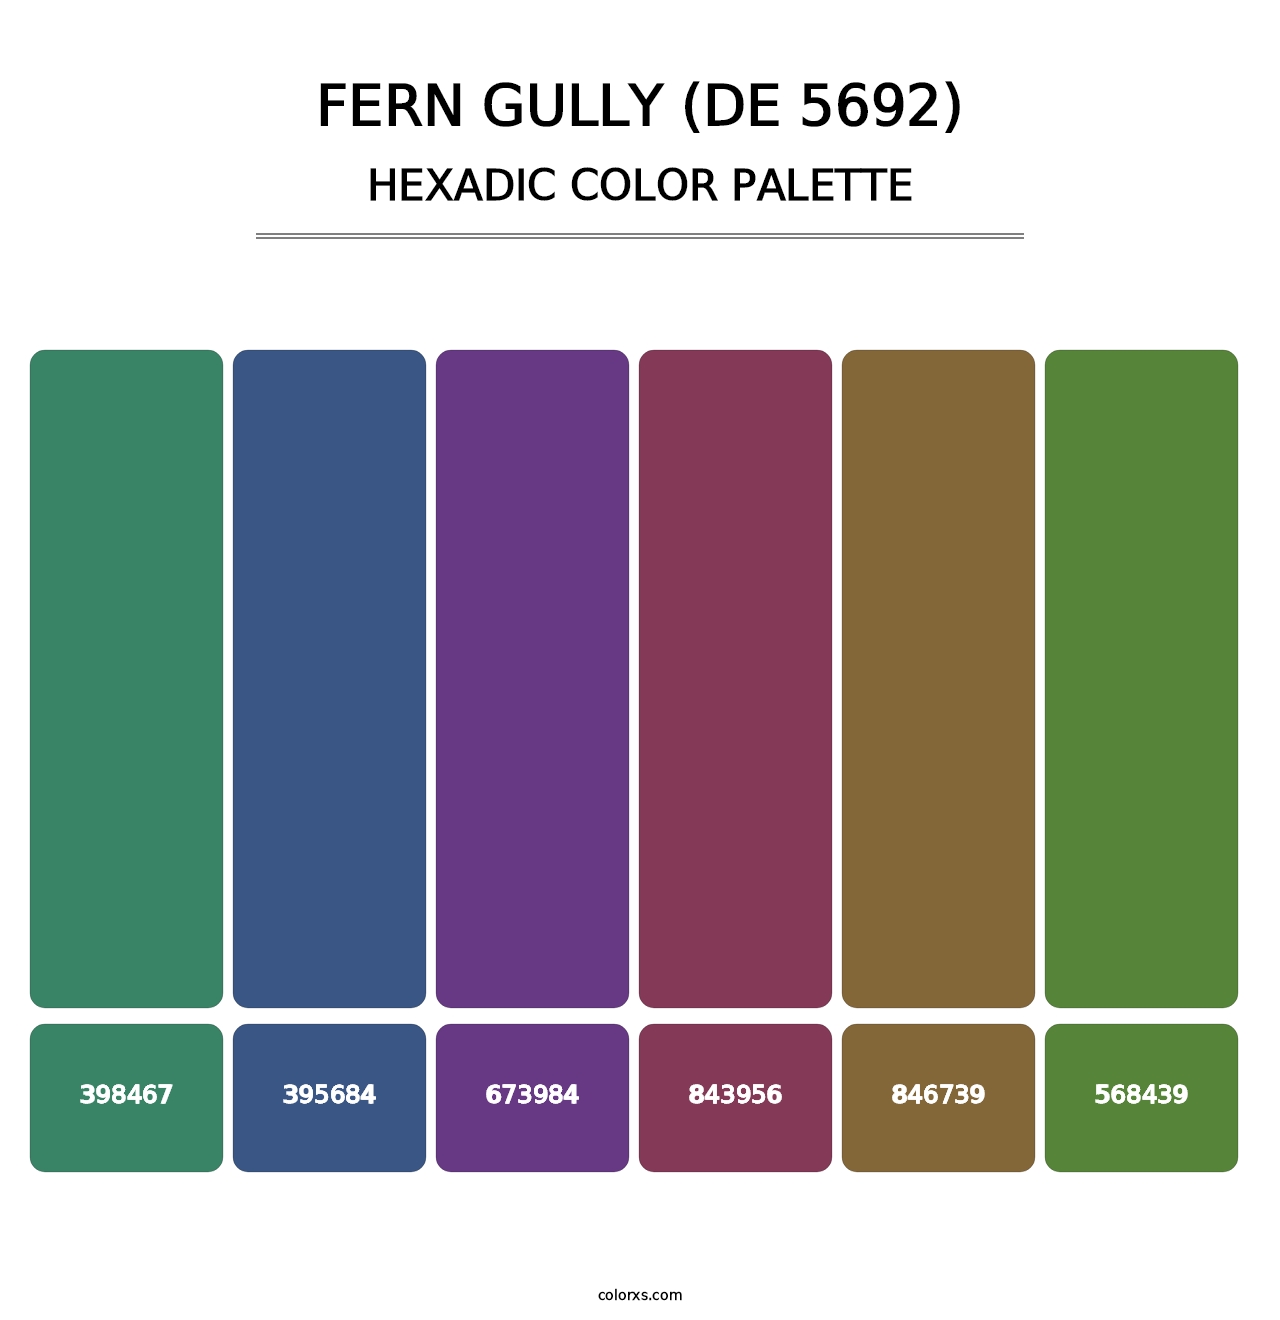 Fern Gully (DE 5692) - Hexadic Color Palette